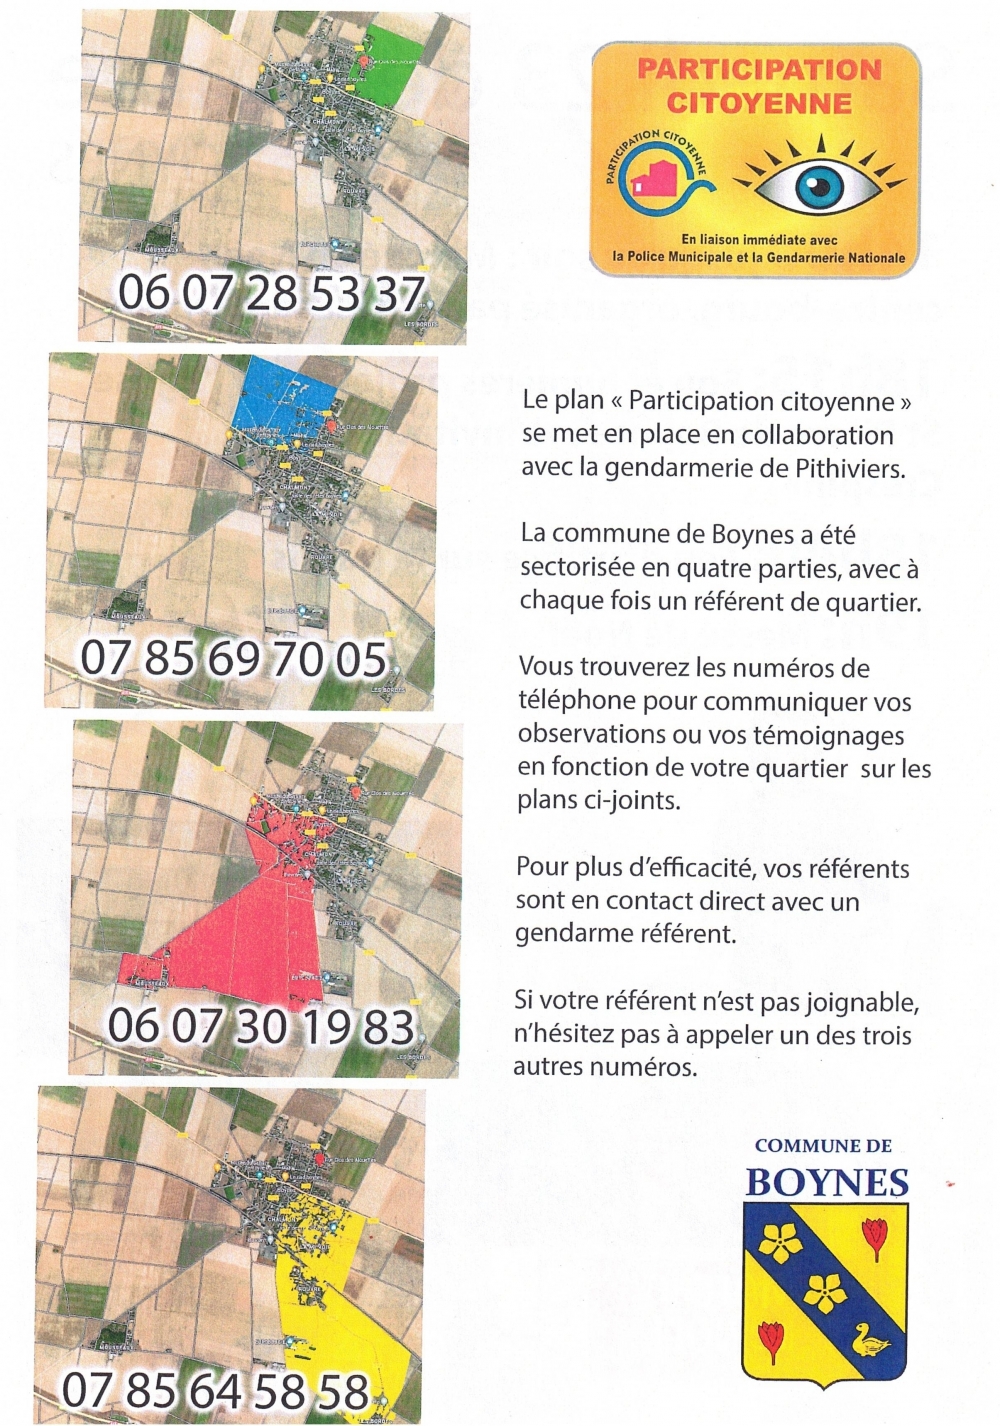 Participation citoyenne - Commune de Boynes